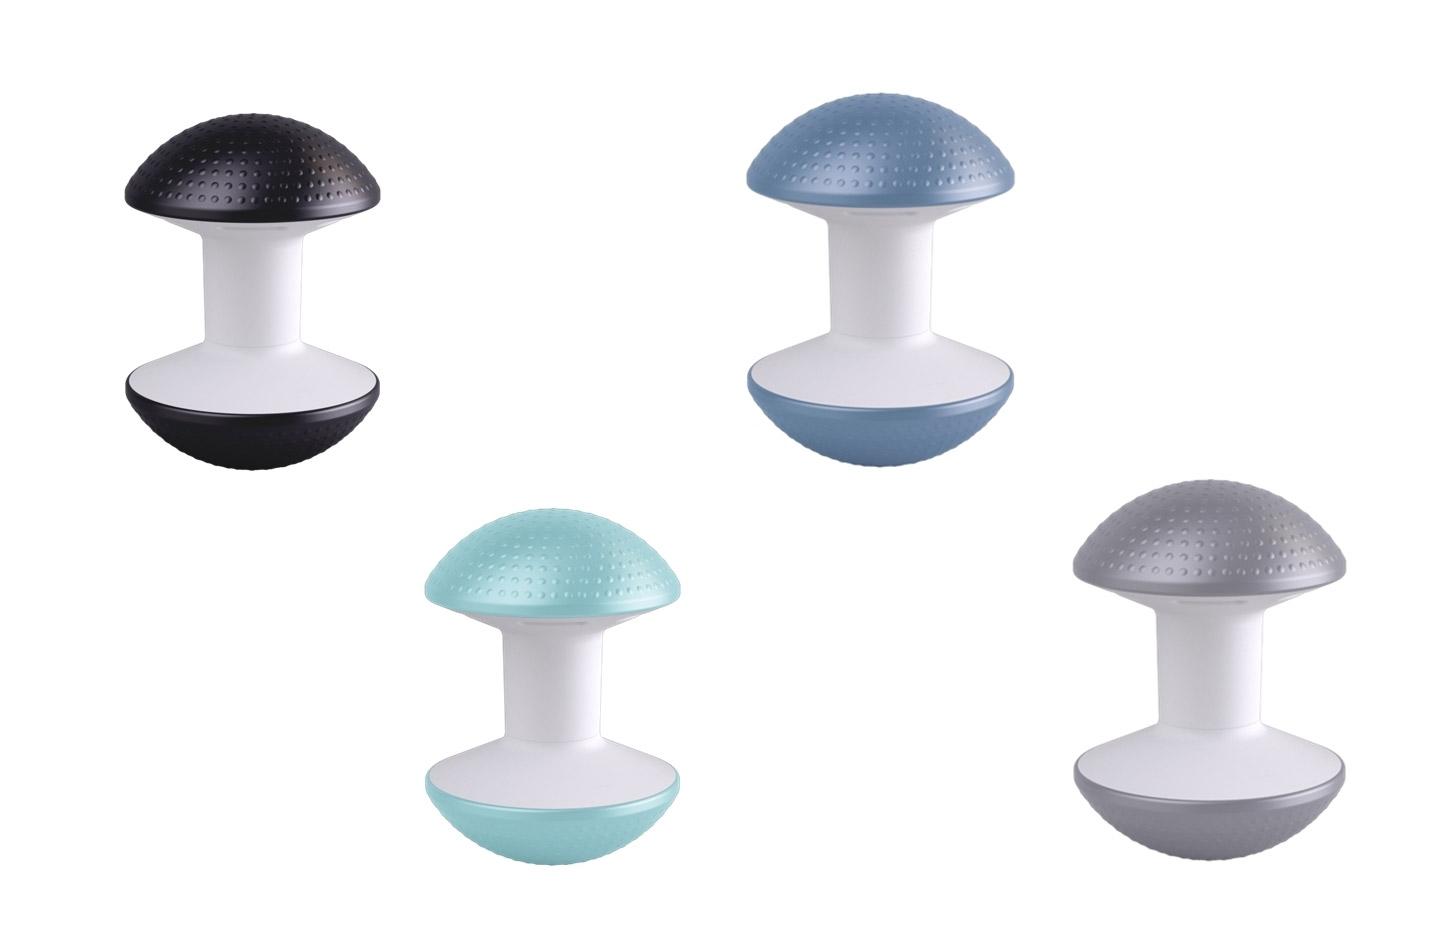 Humanscale accessoires ergonomiques, tabouret multi-usage en thermoplastique antidérapant 5 couleurs disponible, gamme Ballo - France Bureau